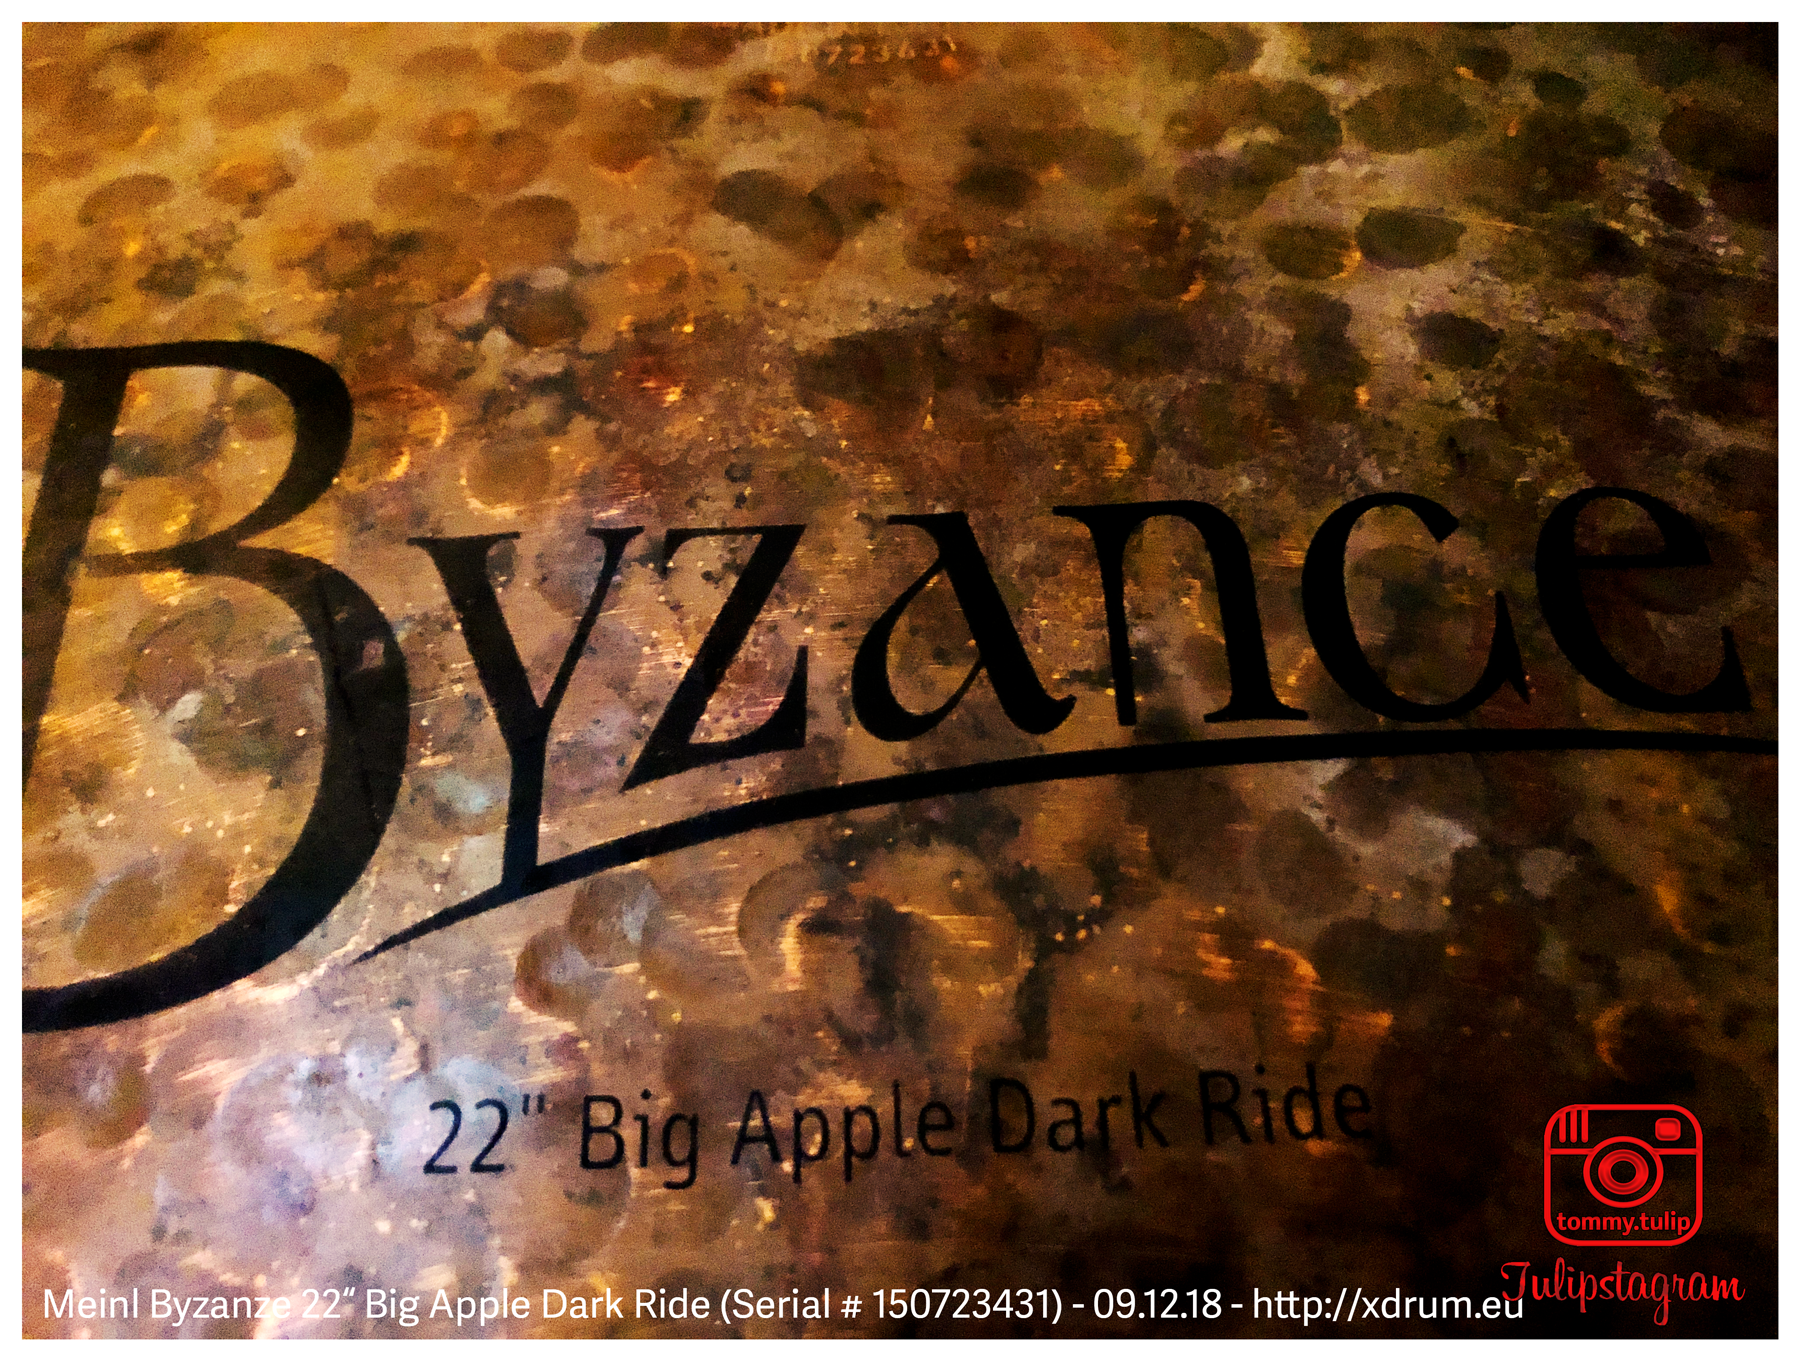 Meinl Byzance Big Apple Dark Ride 22" (Serial # 150723431) - 09.12.18 (© #TTT)